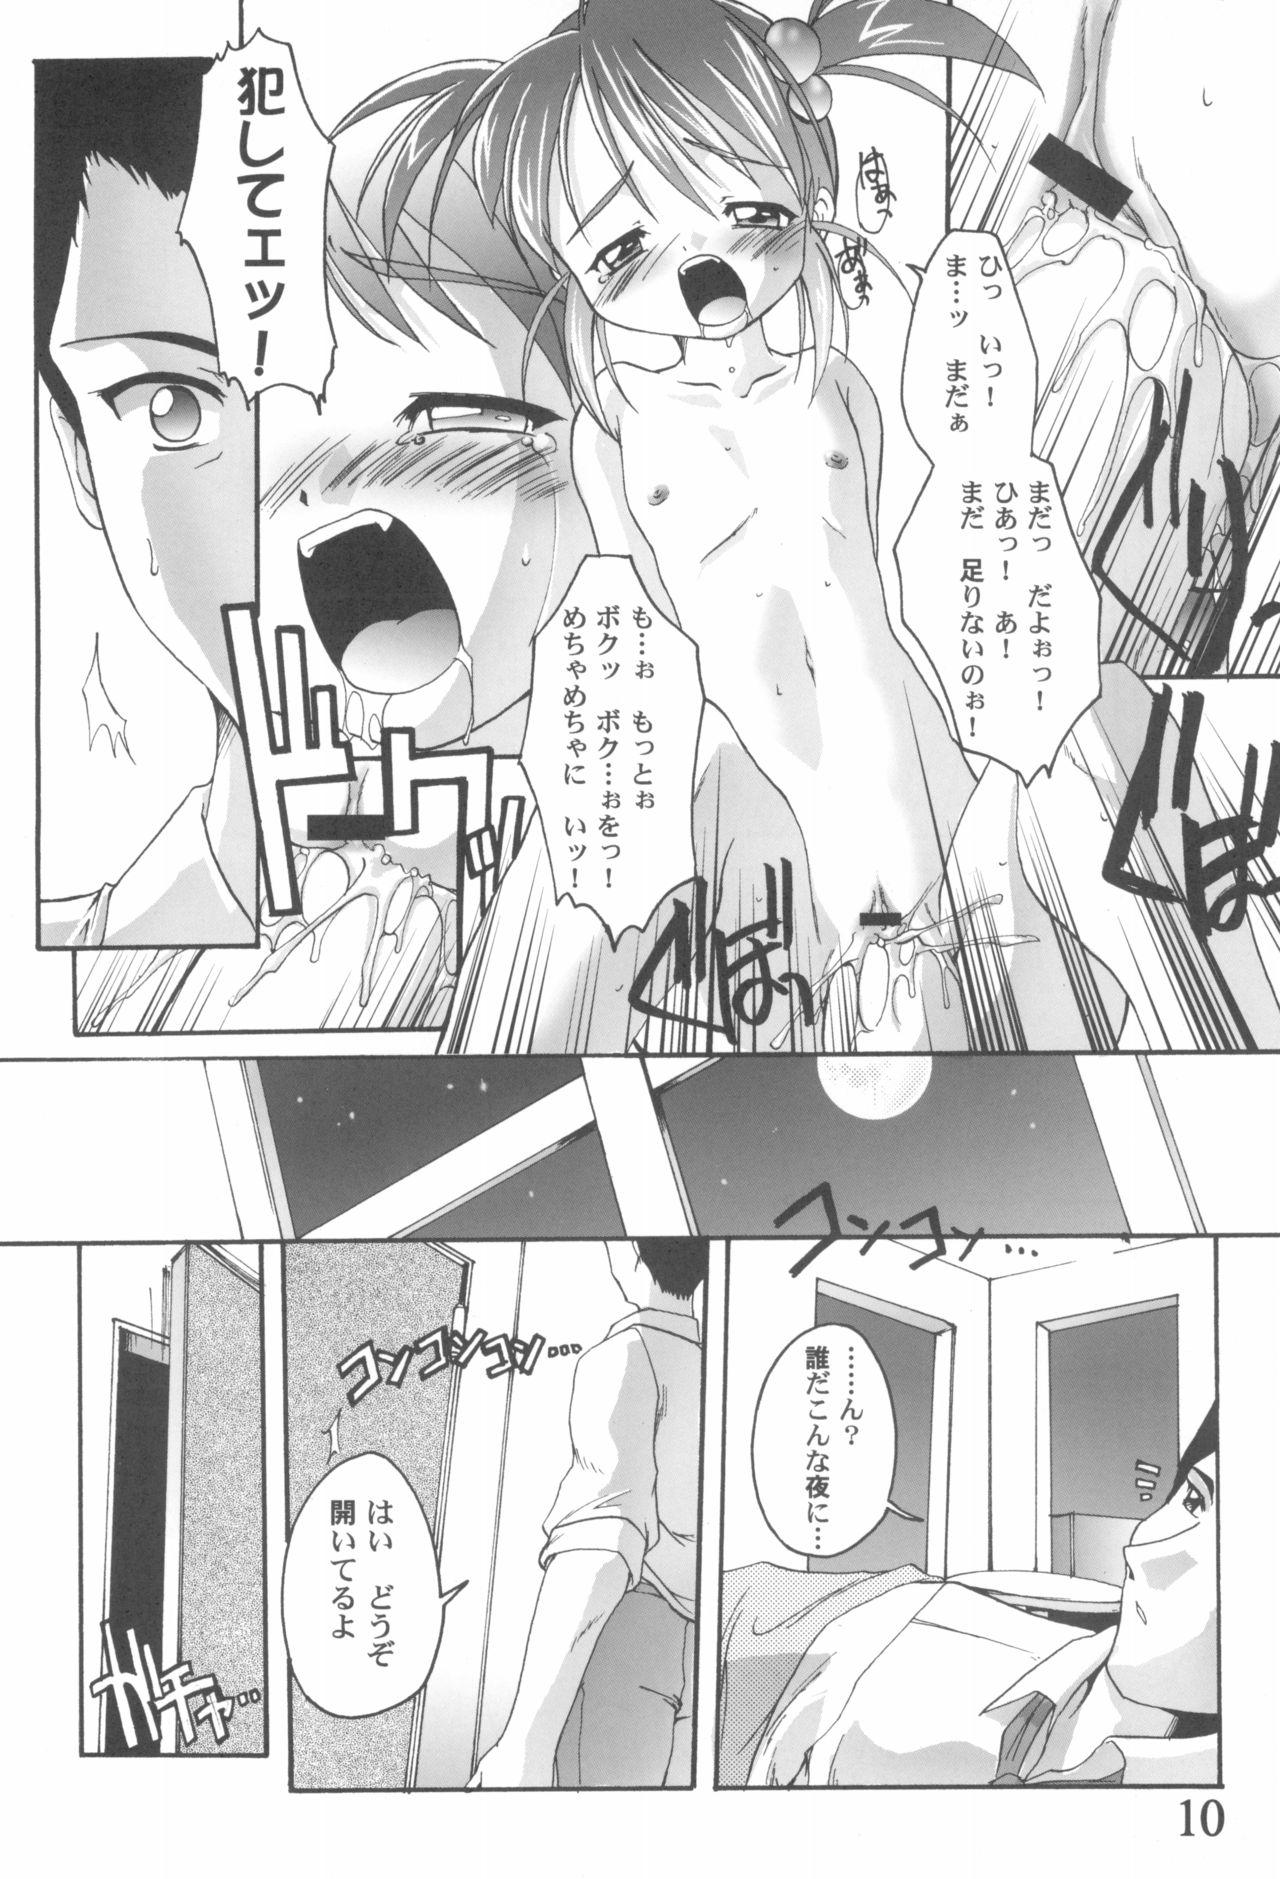 Tiny Tits Kanzen Nenshou 9 Coquelicot Smash! - Sakura taisen Francaise - Page 10